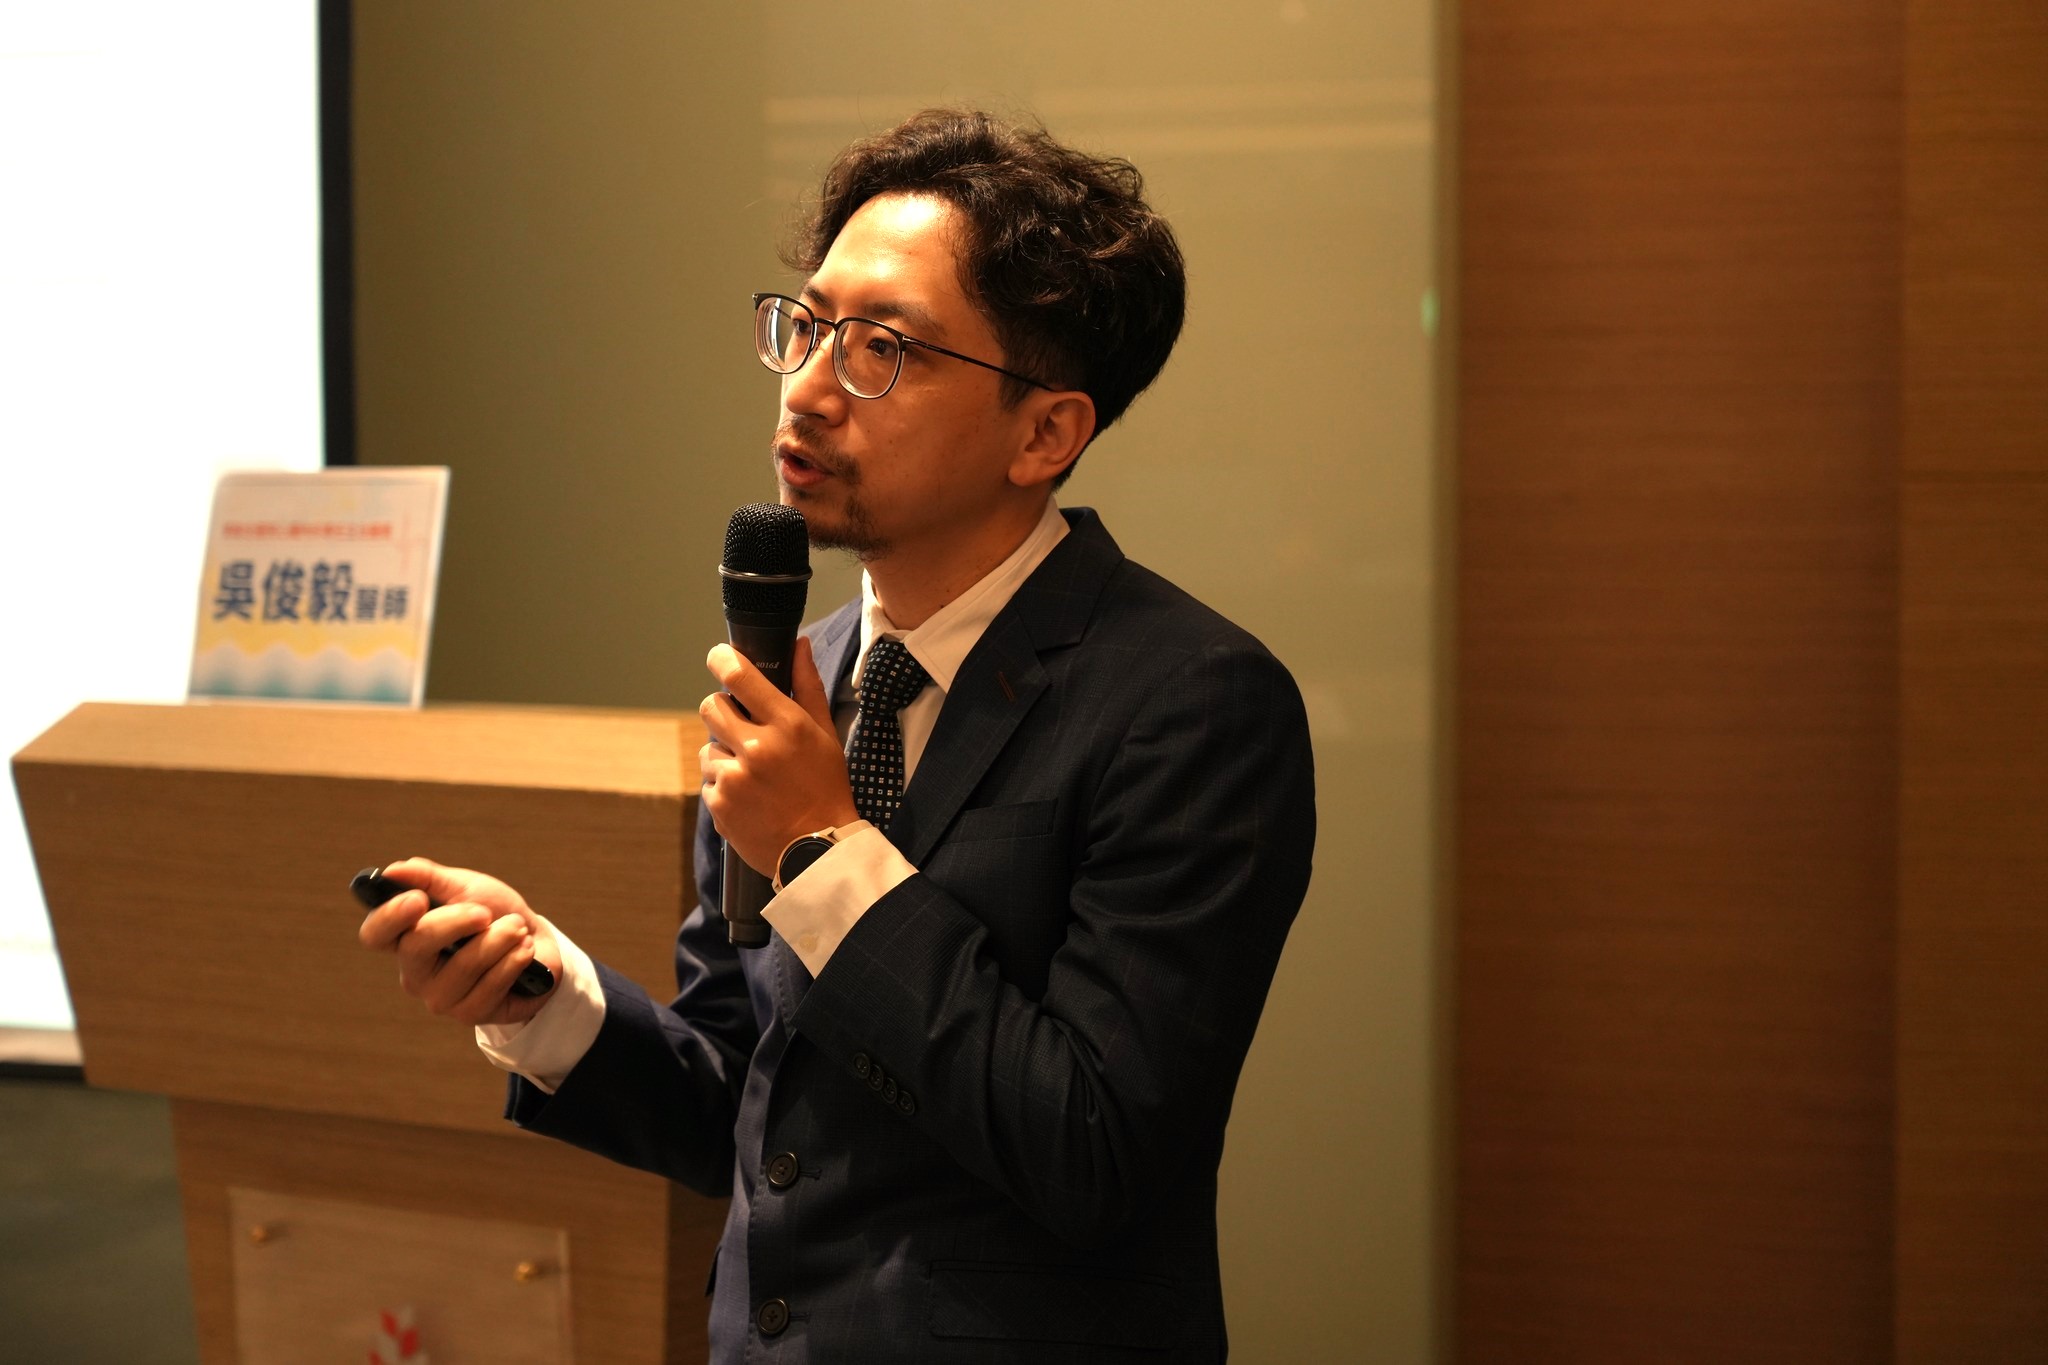 東生華製藥ESG永續經營 心血管衛教講座